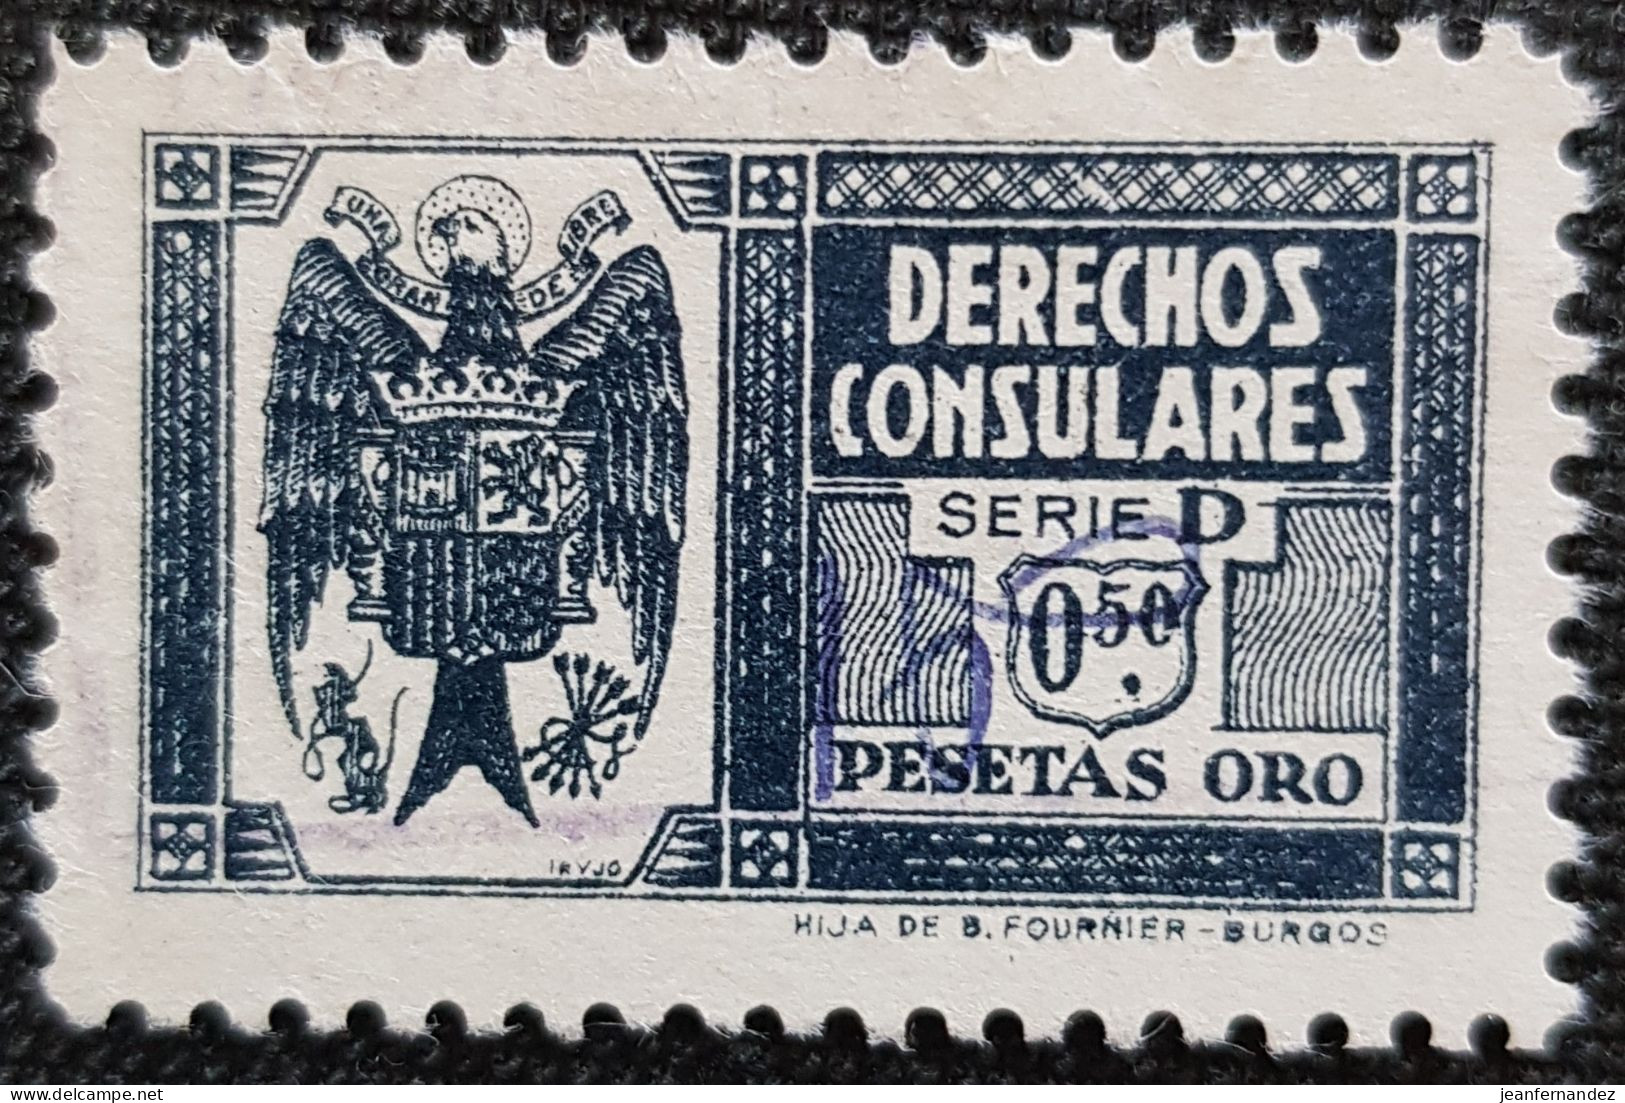 Fiscales Derechos Consulares Serie D 0.50 PTAS ORO - Revenue Stamps